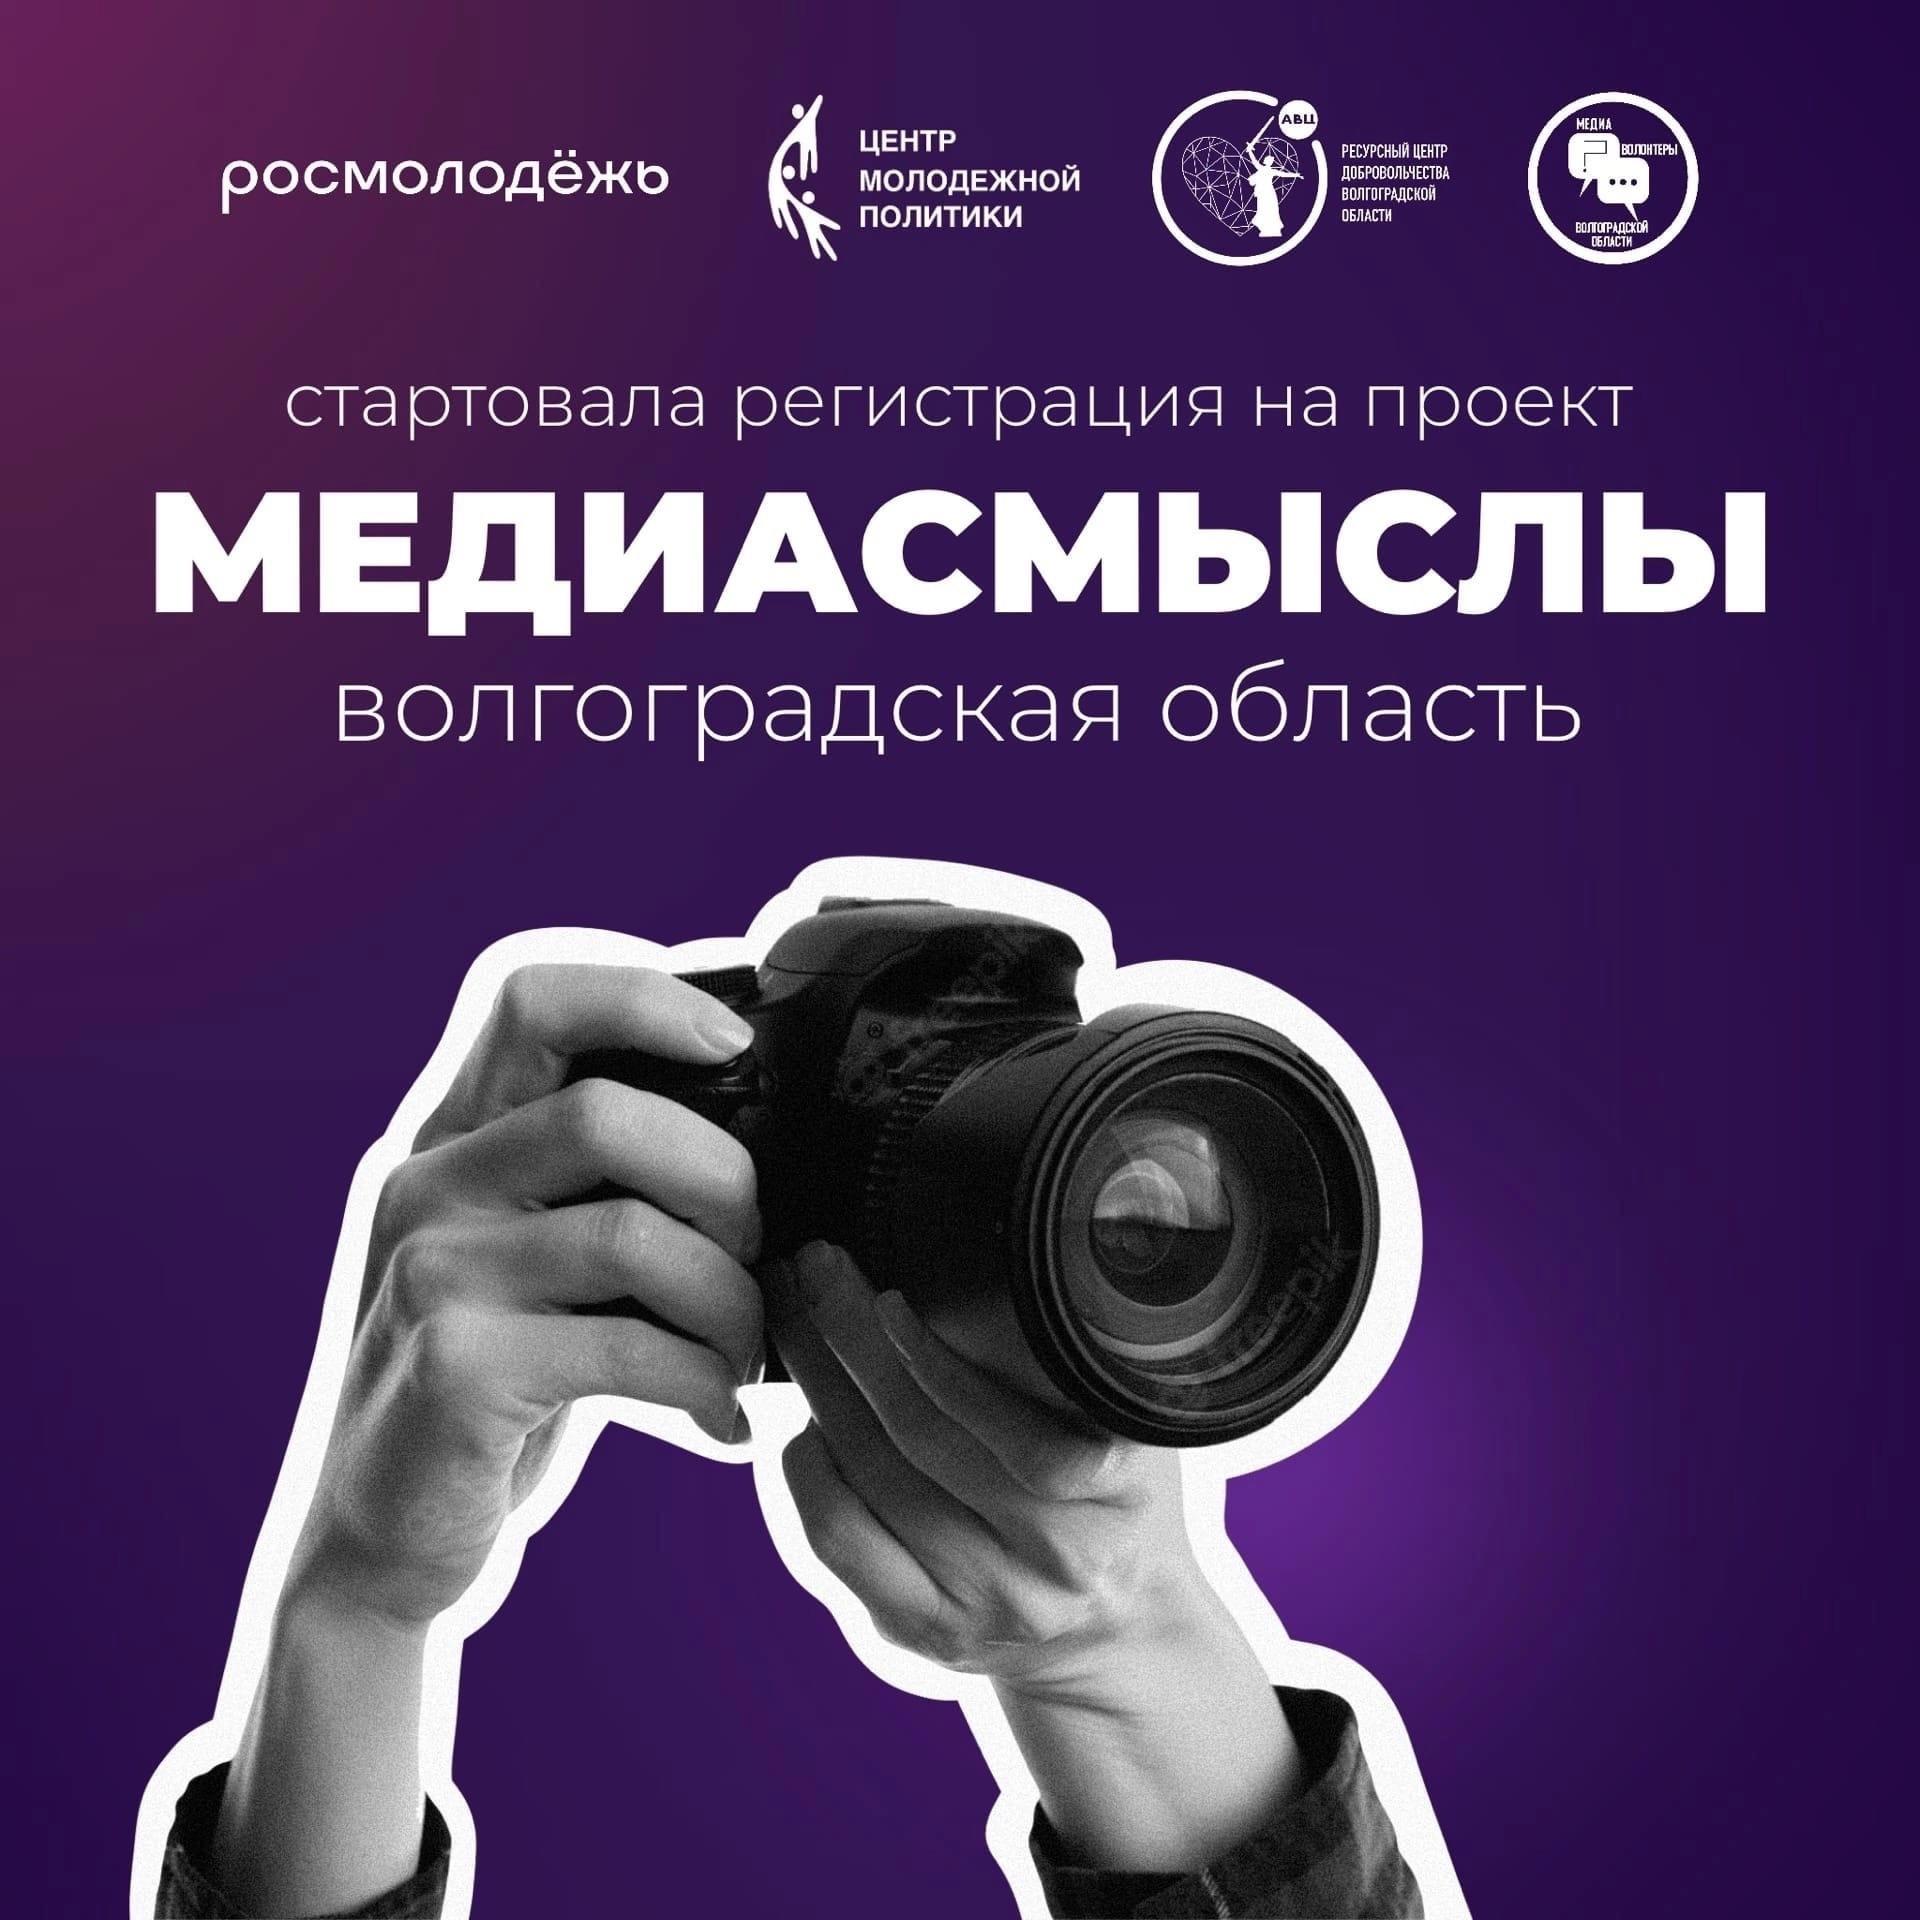 В Волгоградской области стартовала регистрация на МедиаСмыслы